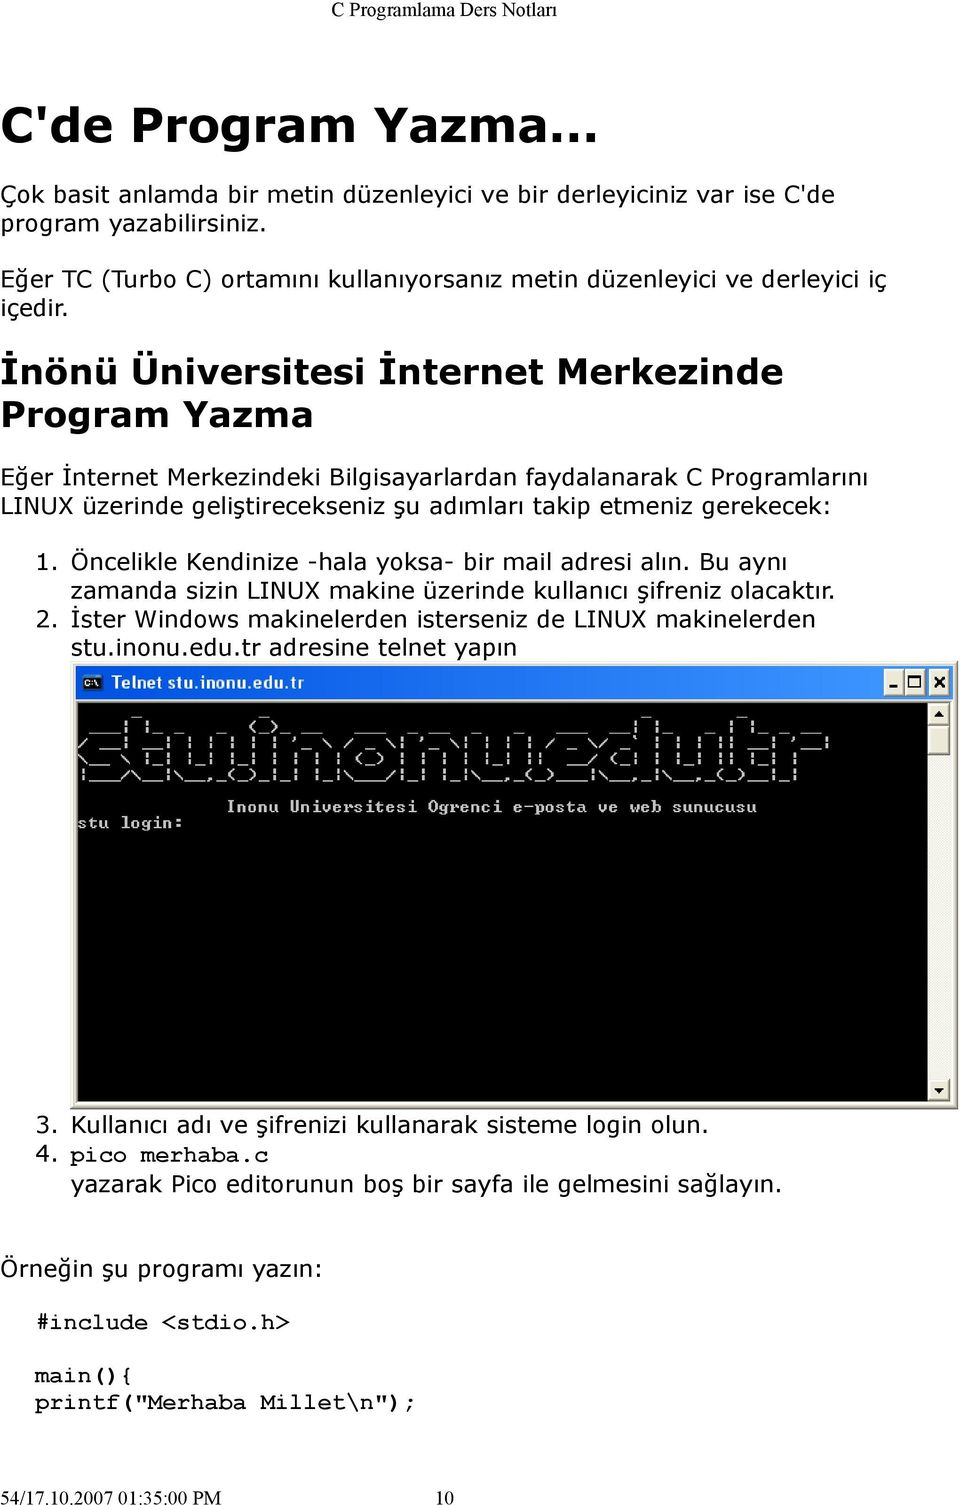 İnönü Üniversitesi İnternet Merkezinde Program Yazma Eğer İnternet Merkezindeki Bilgisayarlardan faydalanarak C Programlarını LINUX üzerinde geliştirecekseniz şu adımları takip etmeniz gerekecek: 1.